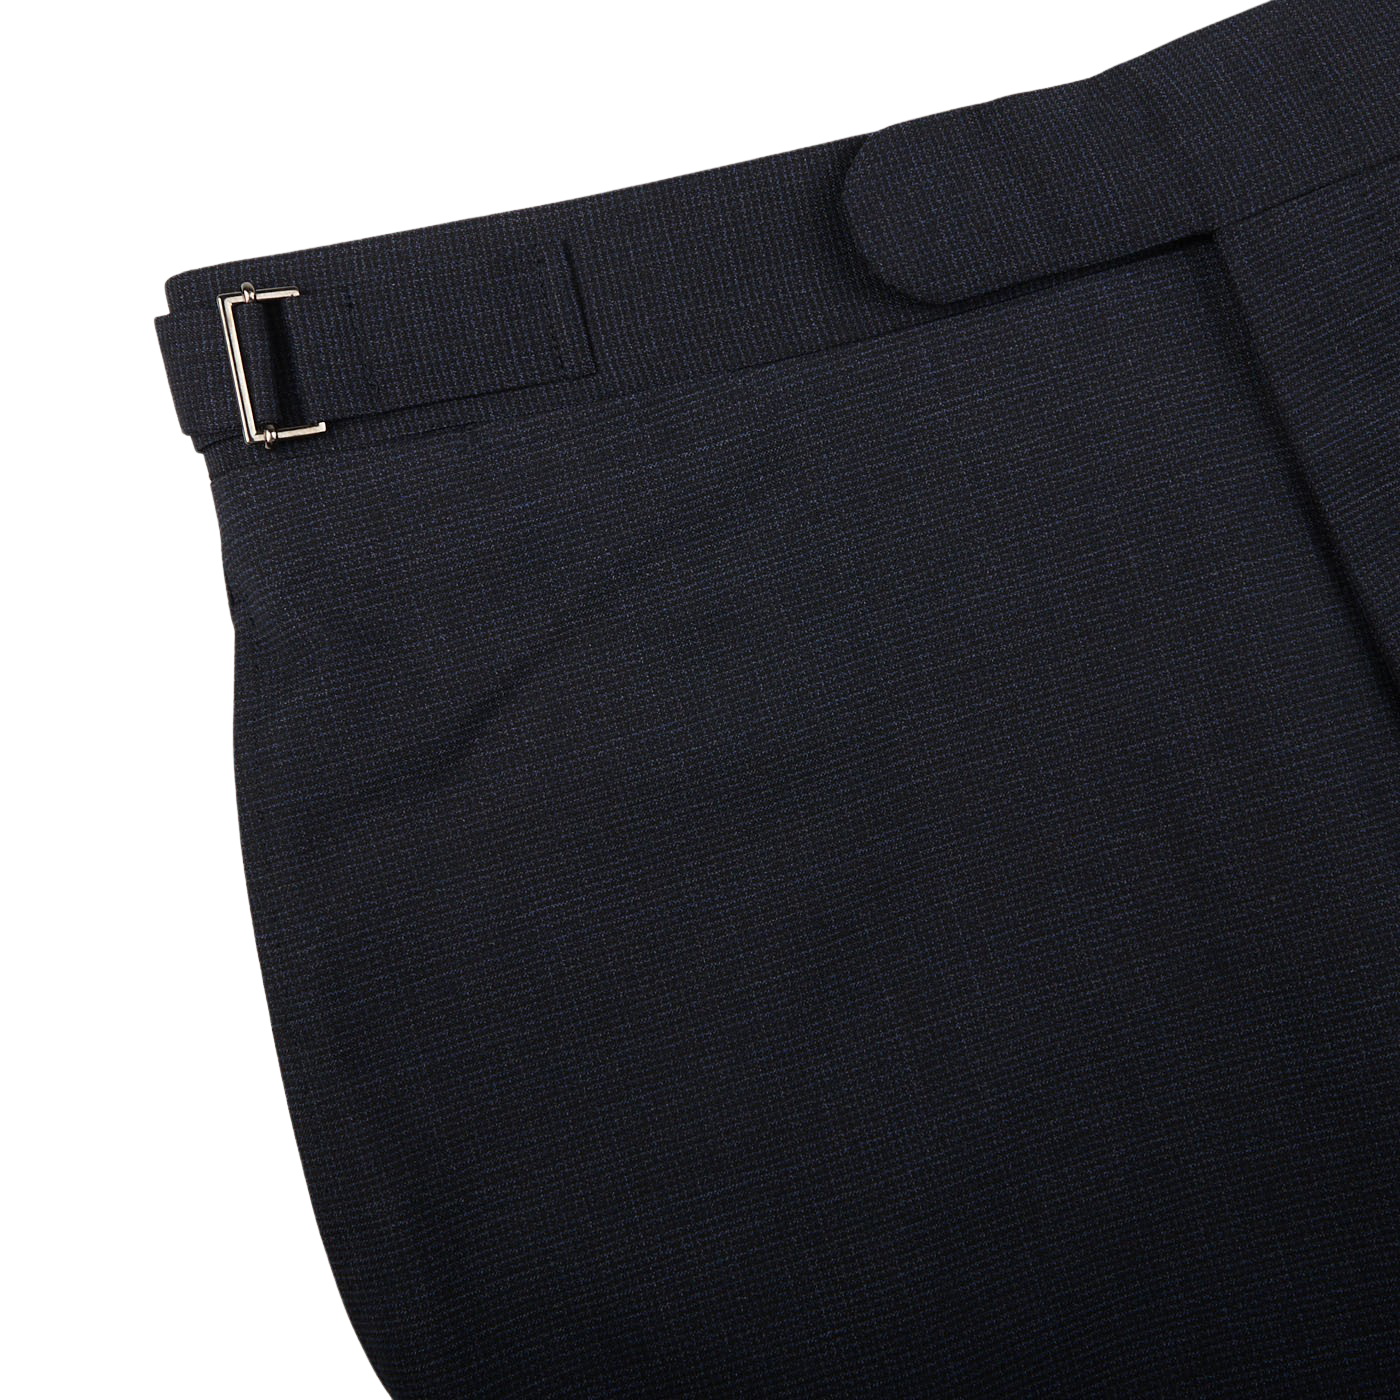 Mens Wool Blend Pants Herringbone Tweed British Straight Legs Trousers  Casual | eBay